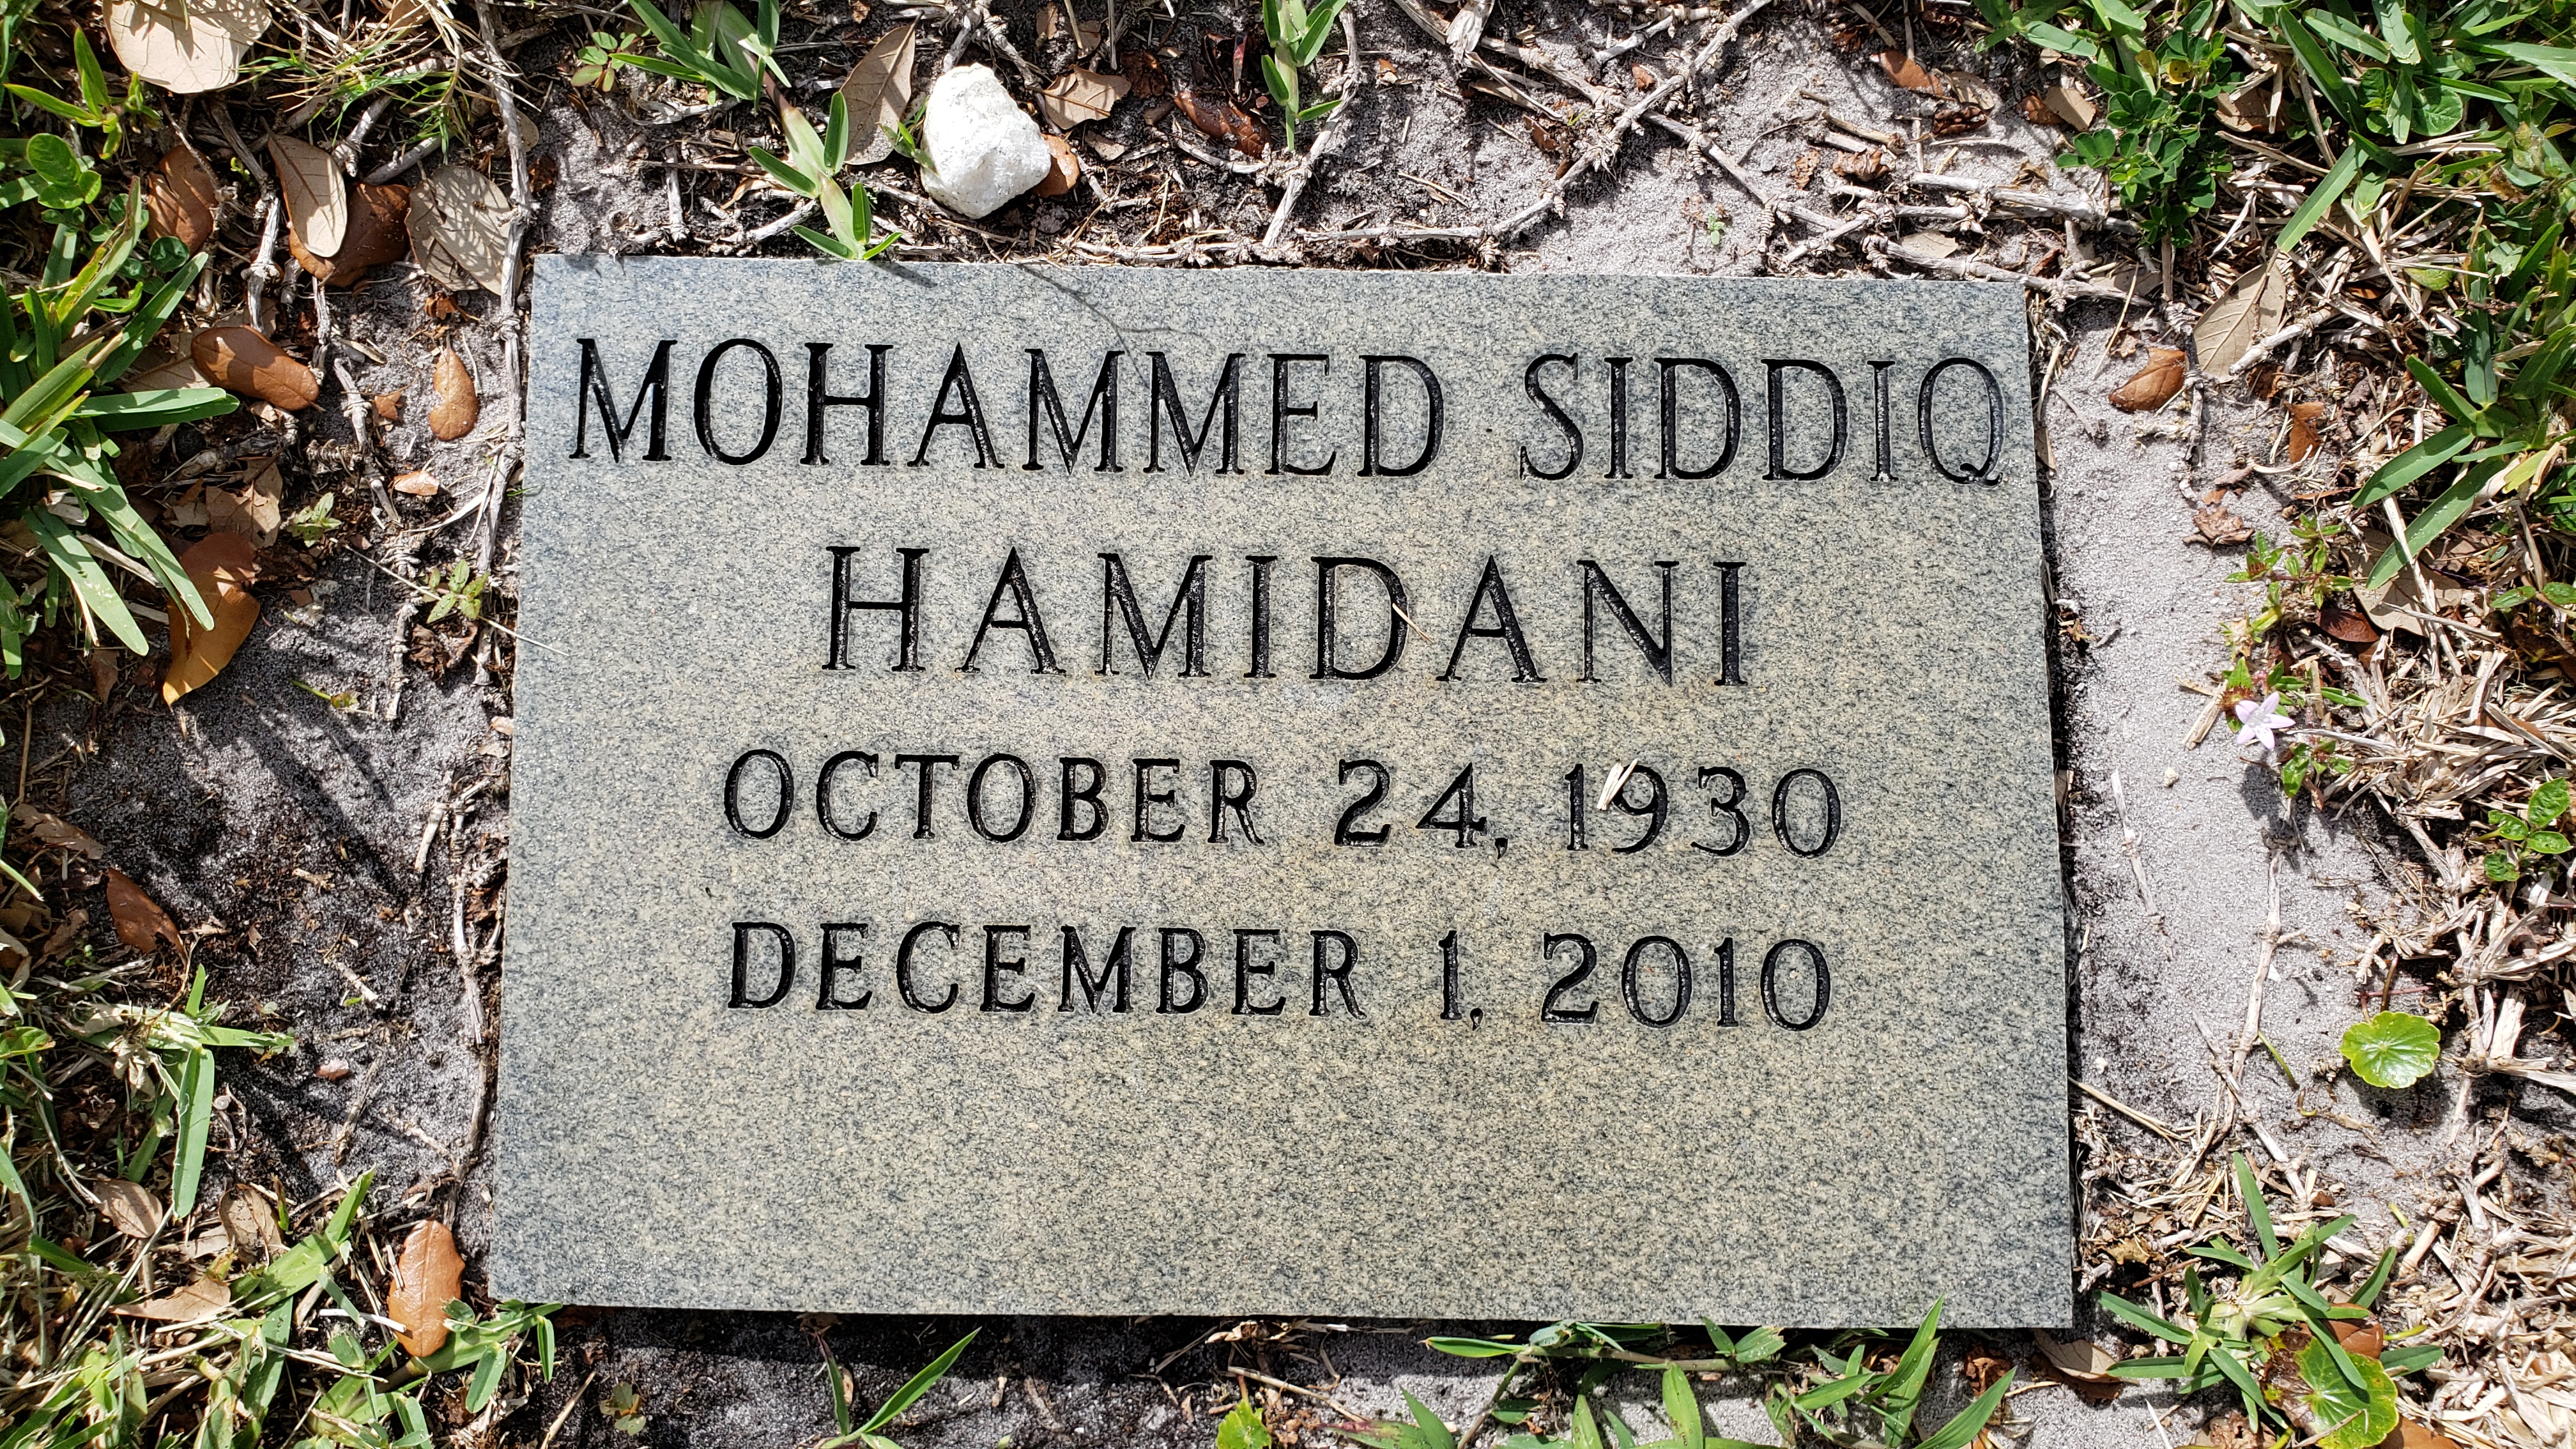 Mohammed Siddiq Hamidani